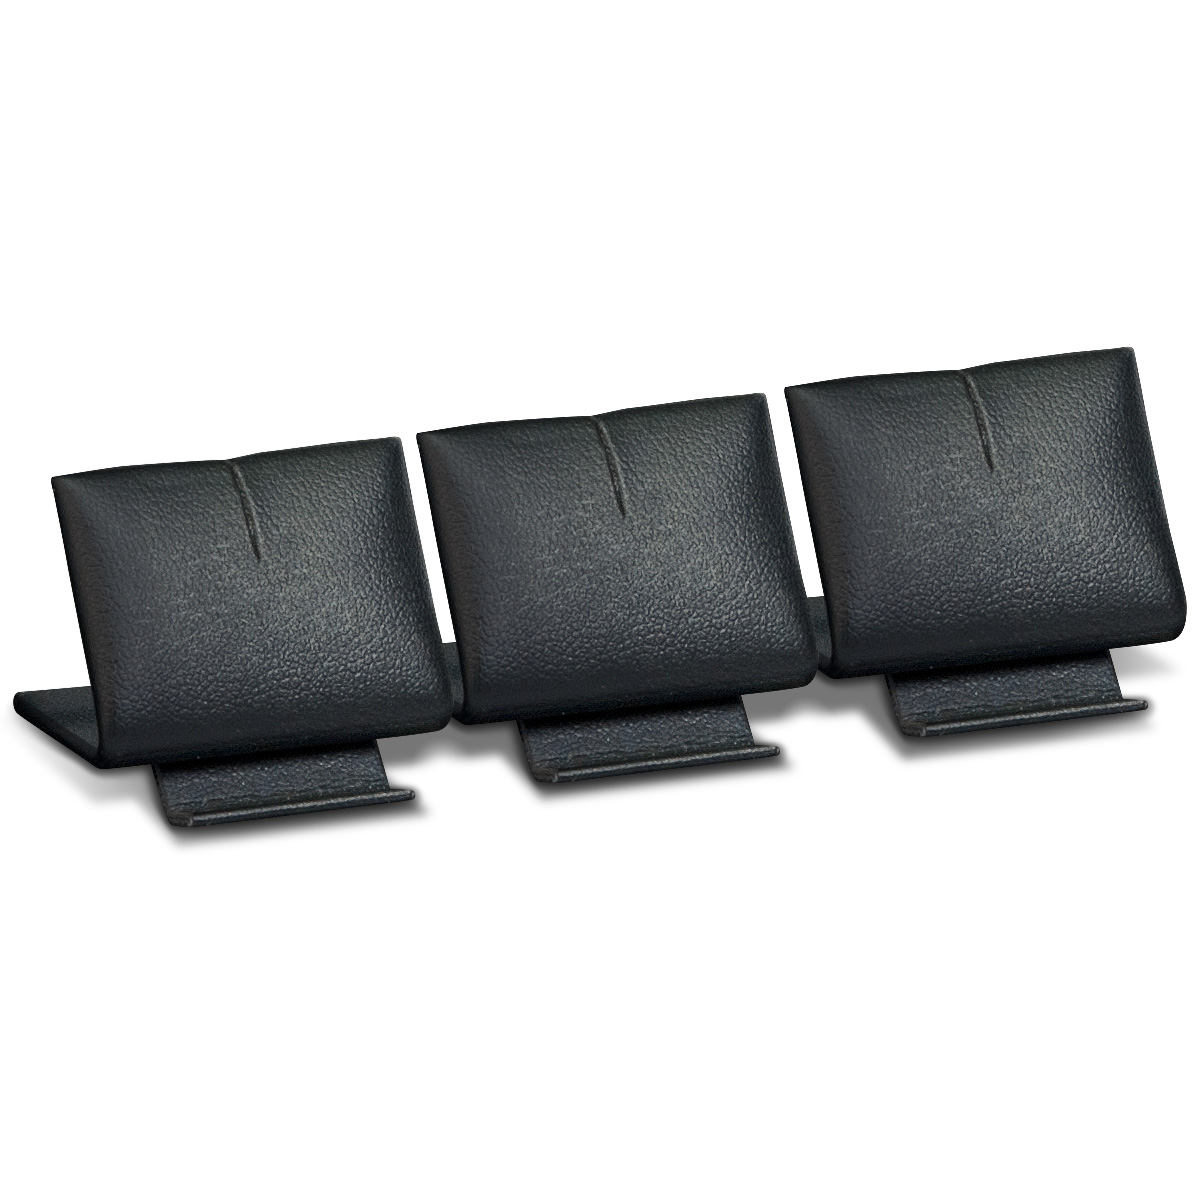 Dreifacher Präsenter für Anhänger, niedrig, schwarz, Glattledernachbildung, LxBxH ca. 3,0 x 11,0 x 3,0 cm